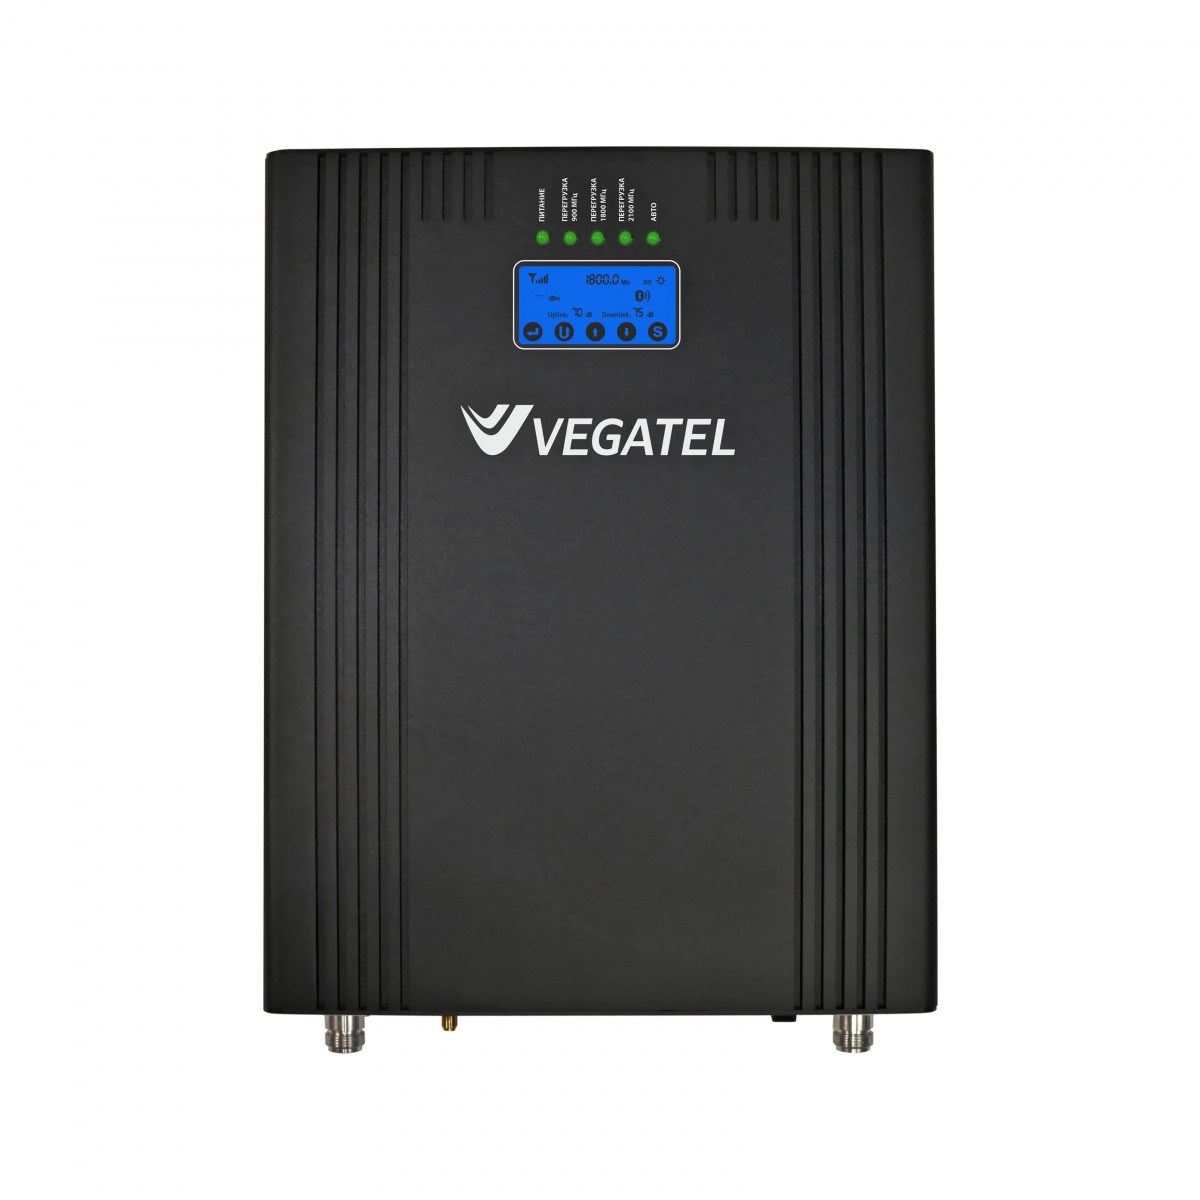 Детальное изображение товара "Репитер Vegatel VT3-900E/1800/2100" из каталога оборудования Антенна76